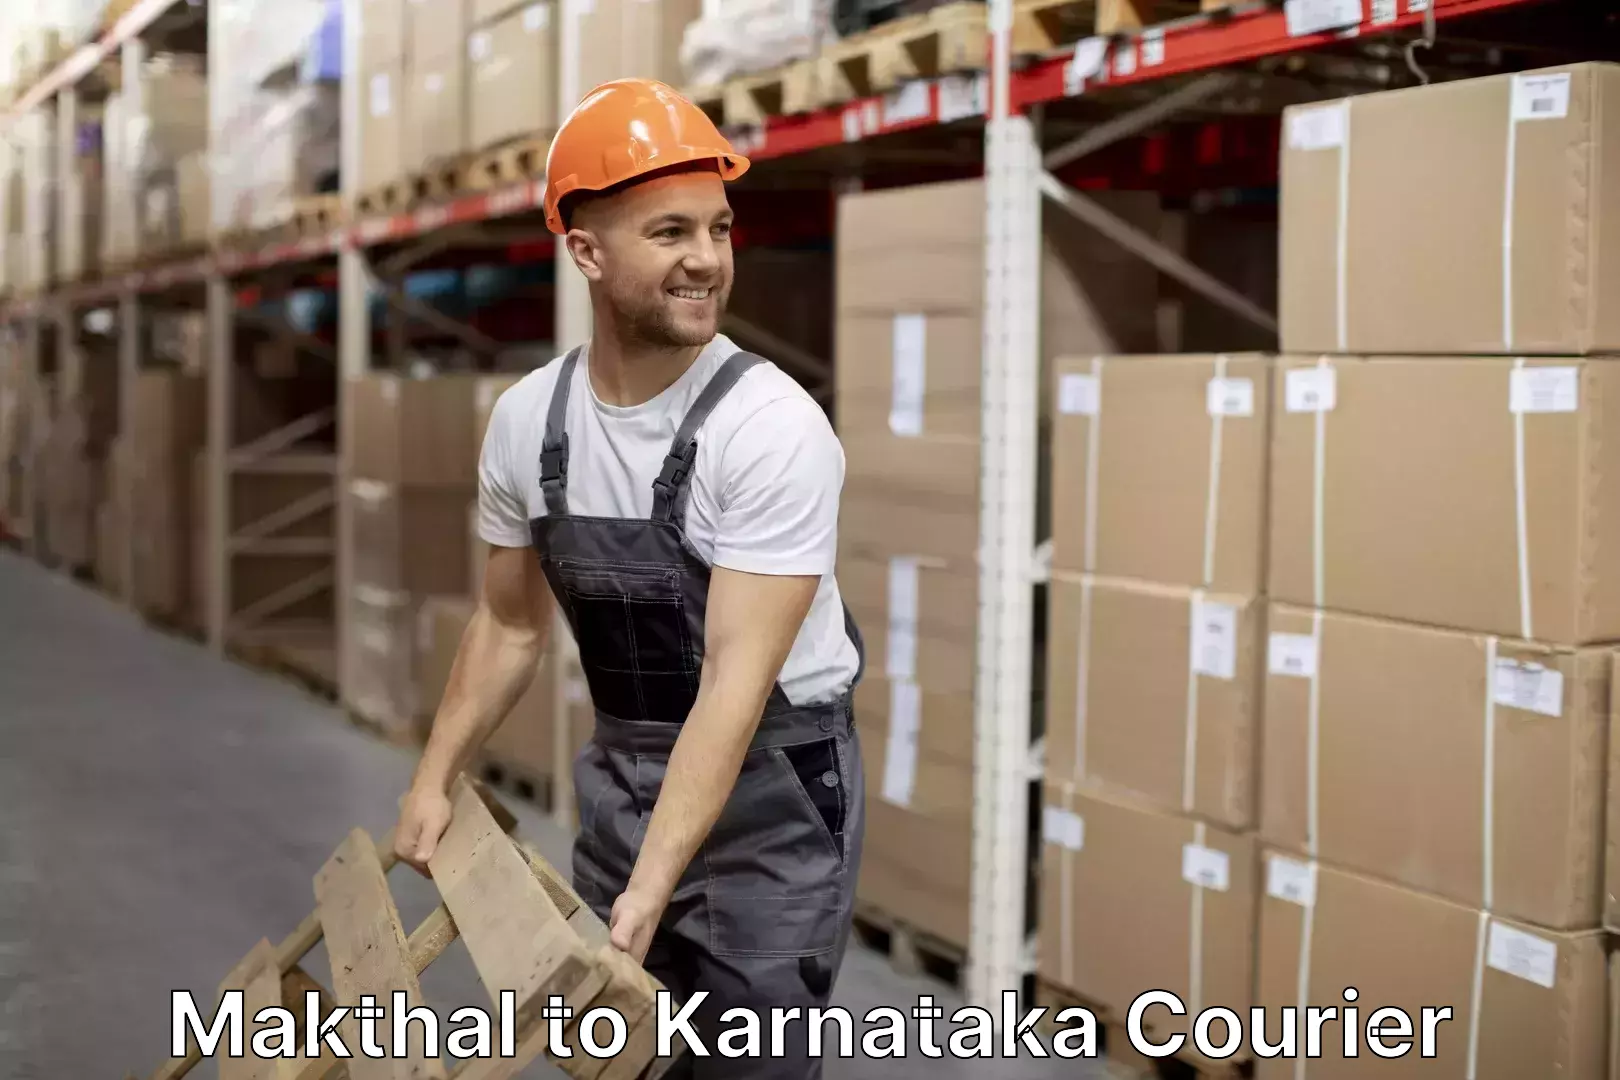 Quality moving company Makthal to Karnataka